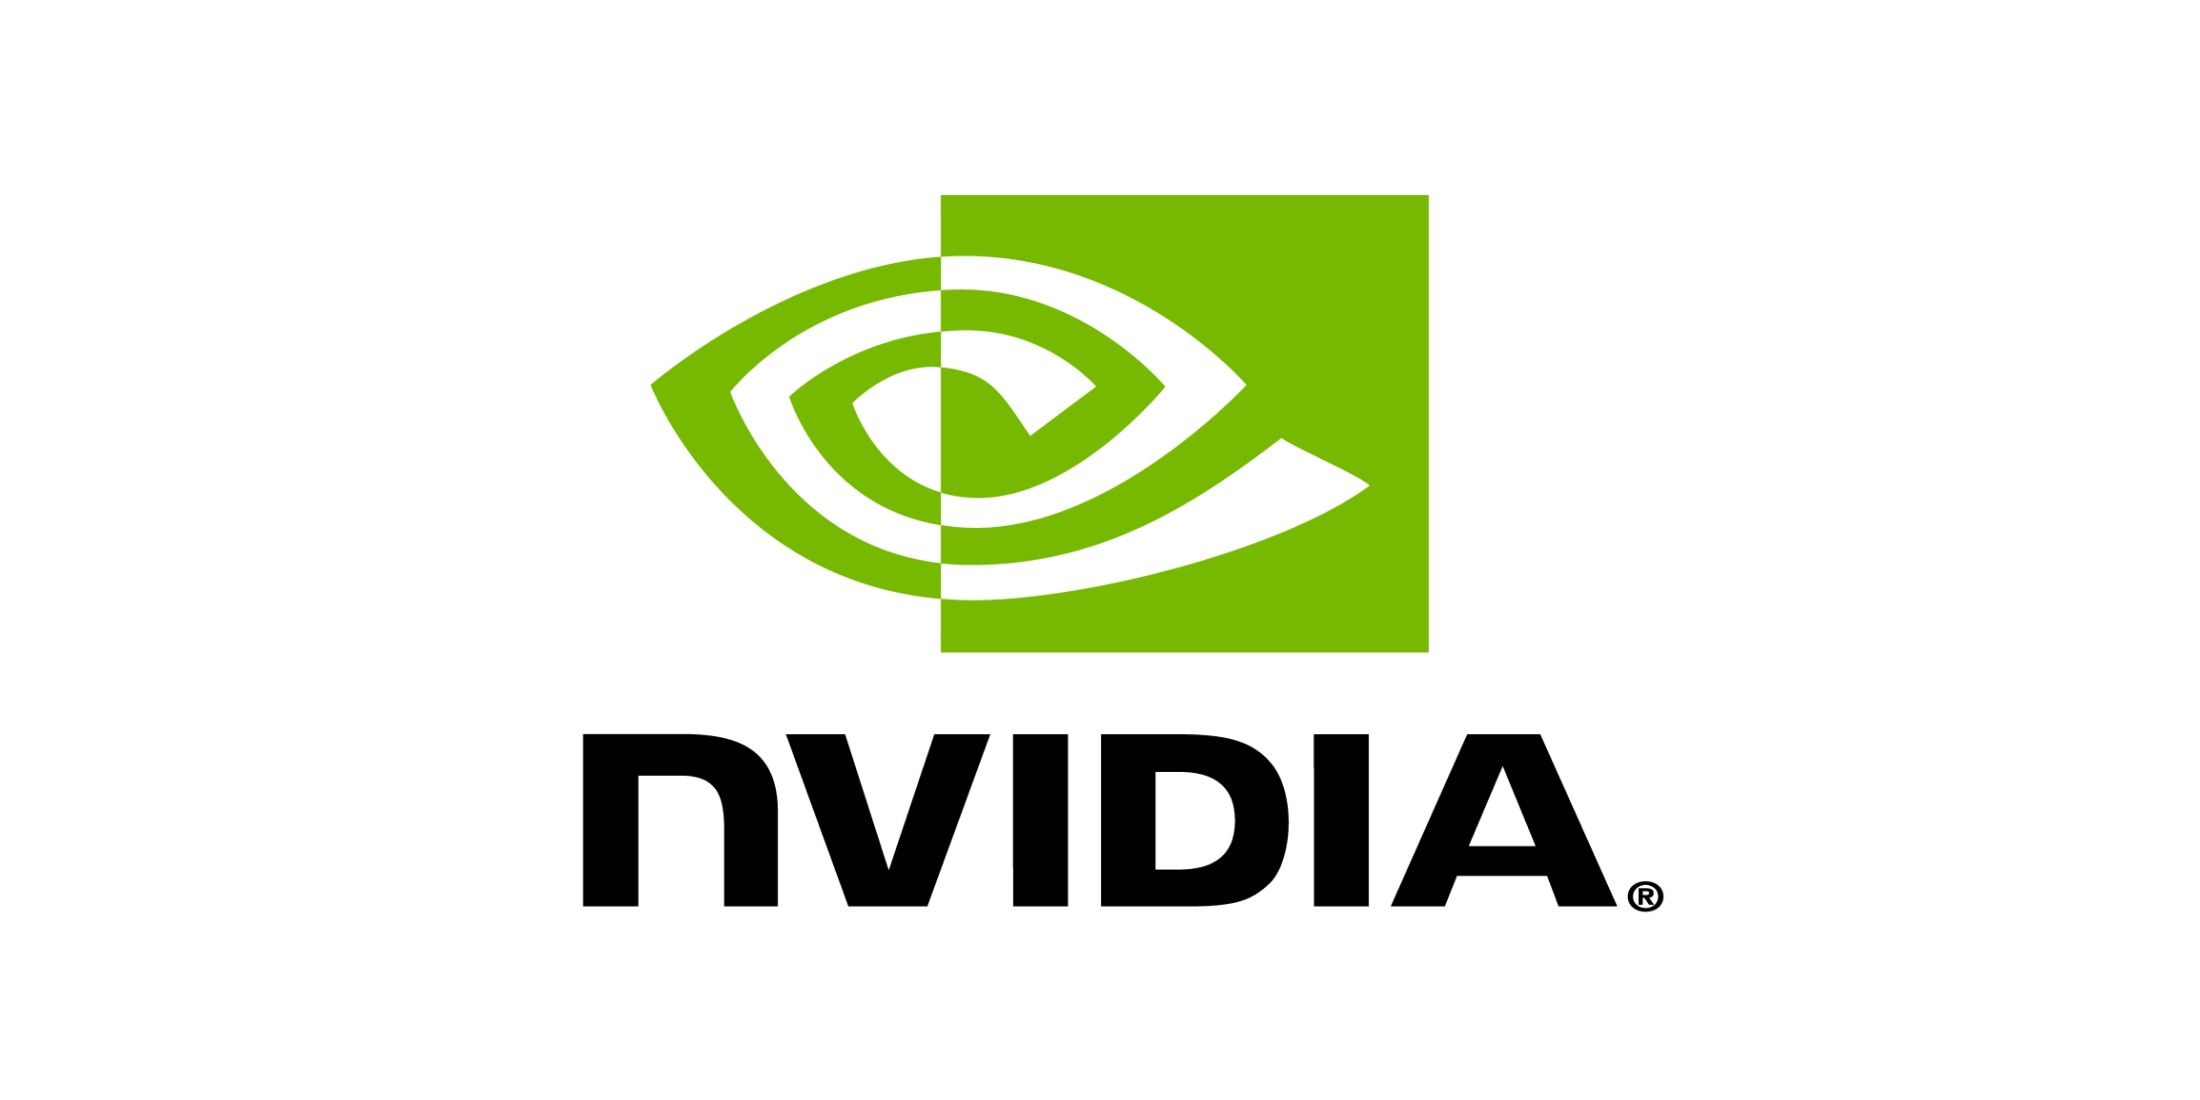 nvidia-logo-white-background-2200x1100